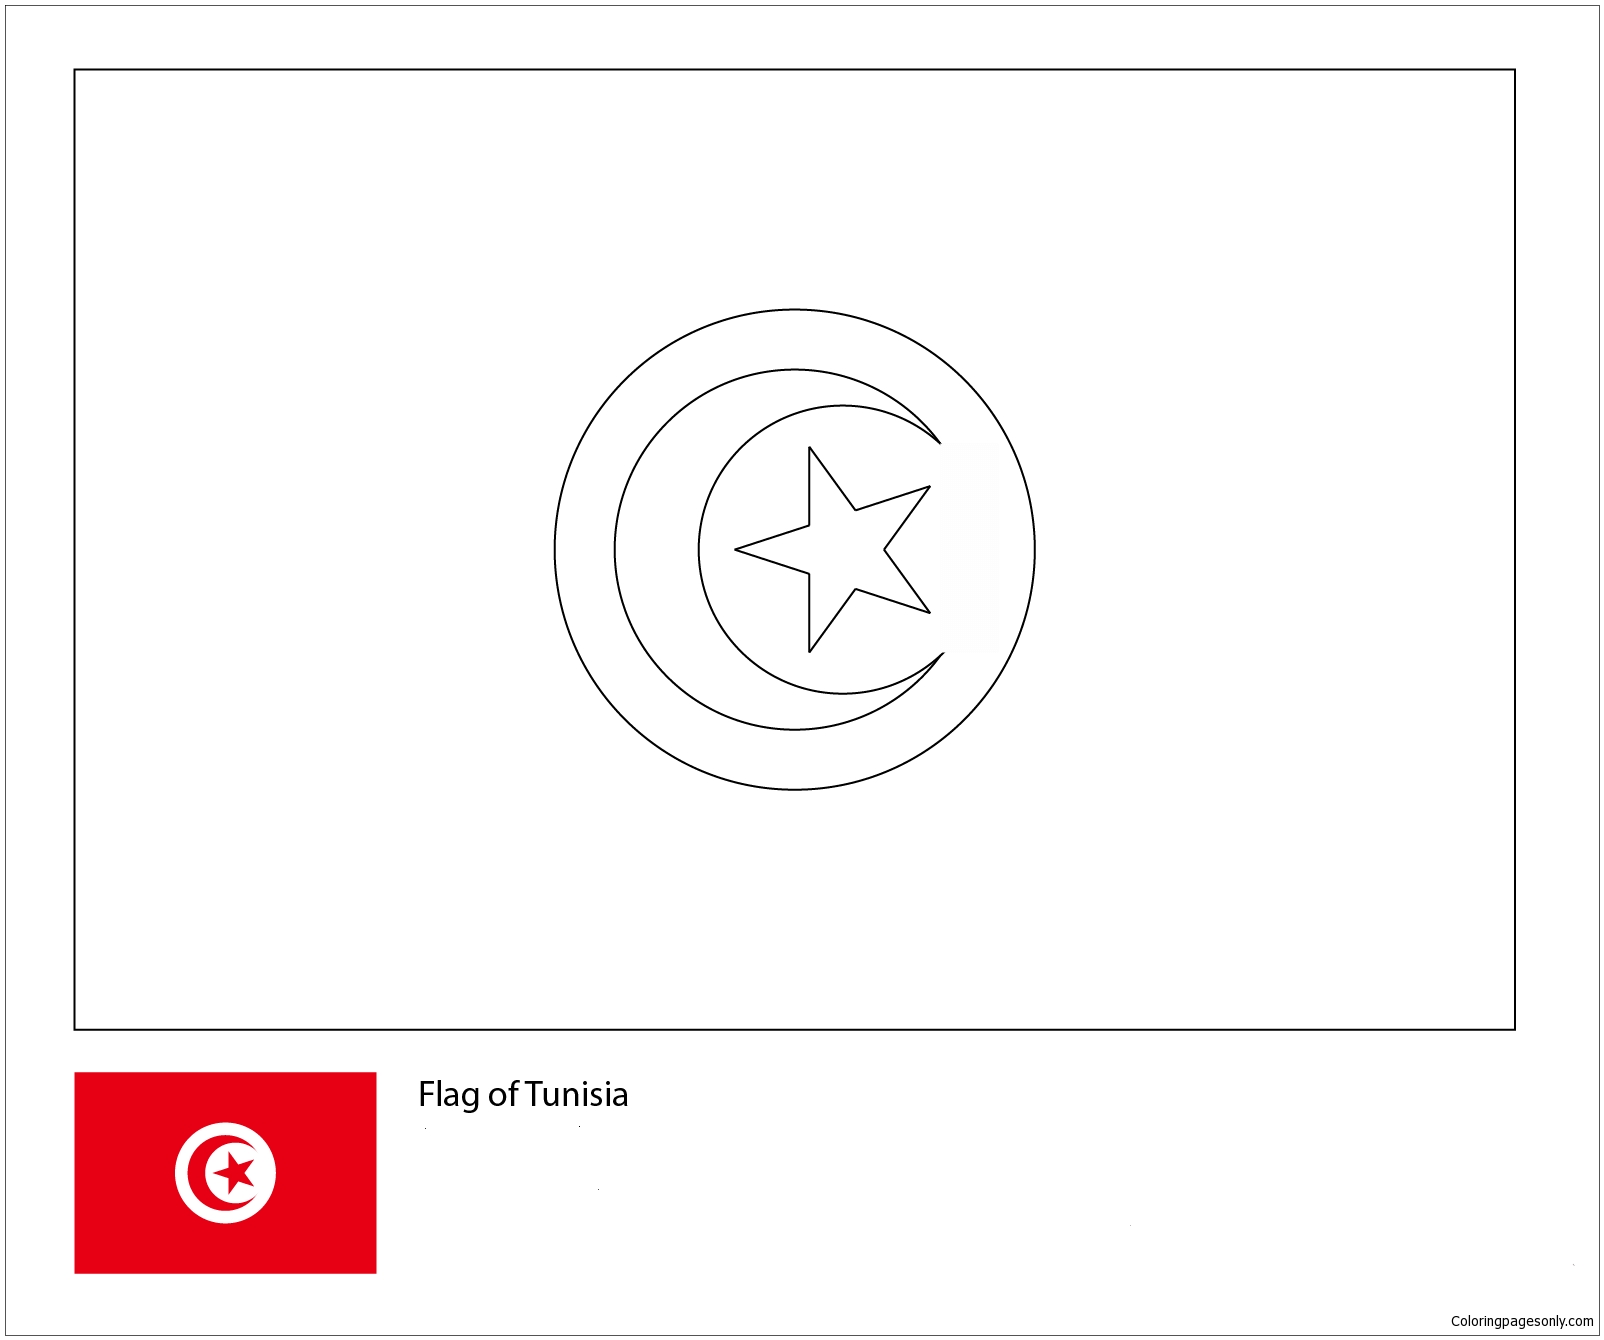 Flagge von Tunesien – Weltmeisterschaft 2018 aus den Flaggen der Weltmeisterschaft 2018